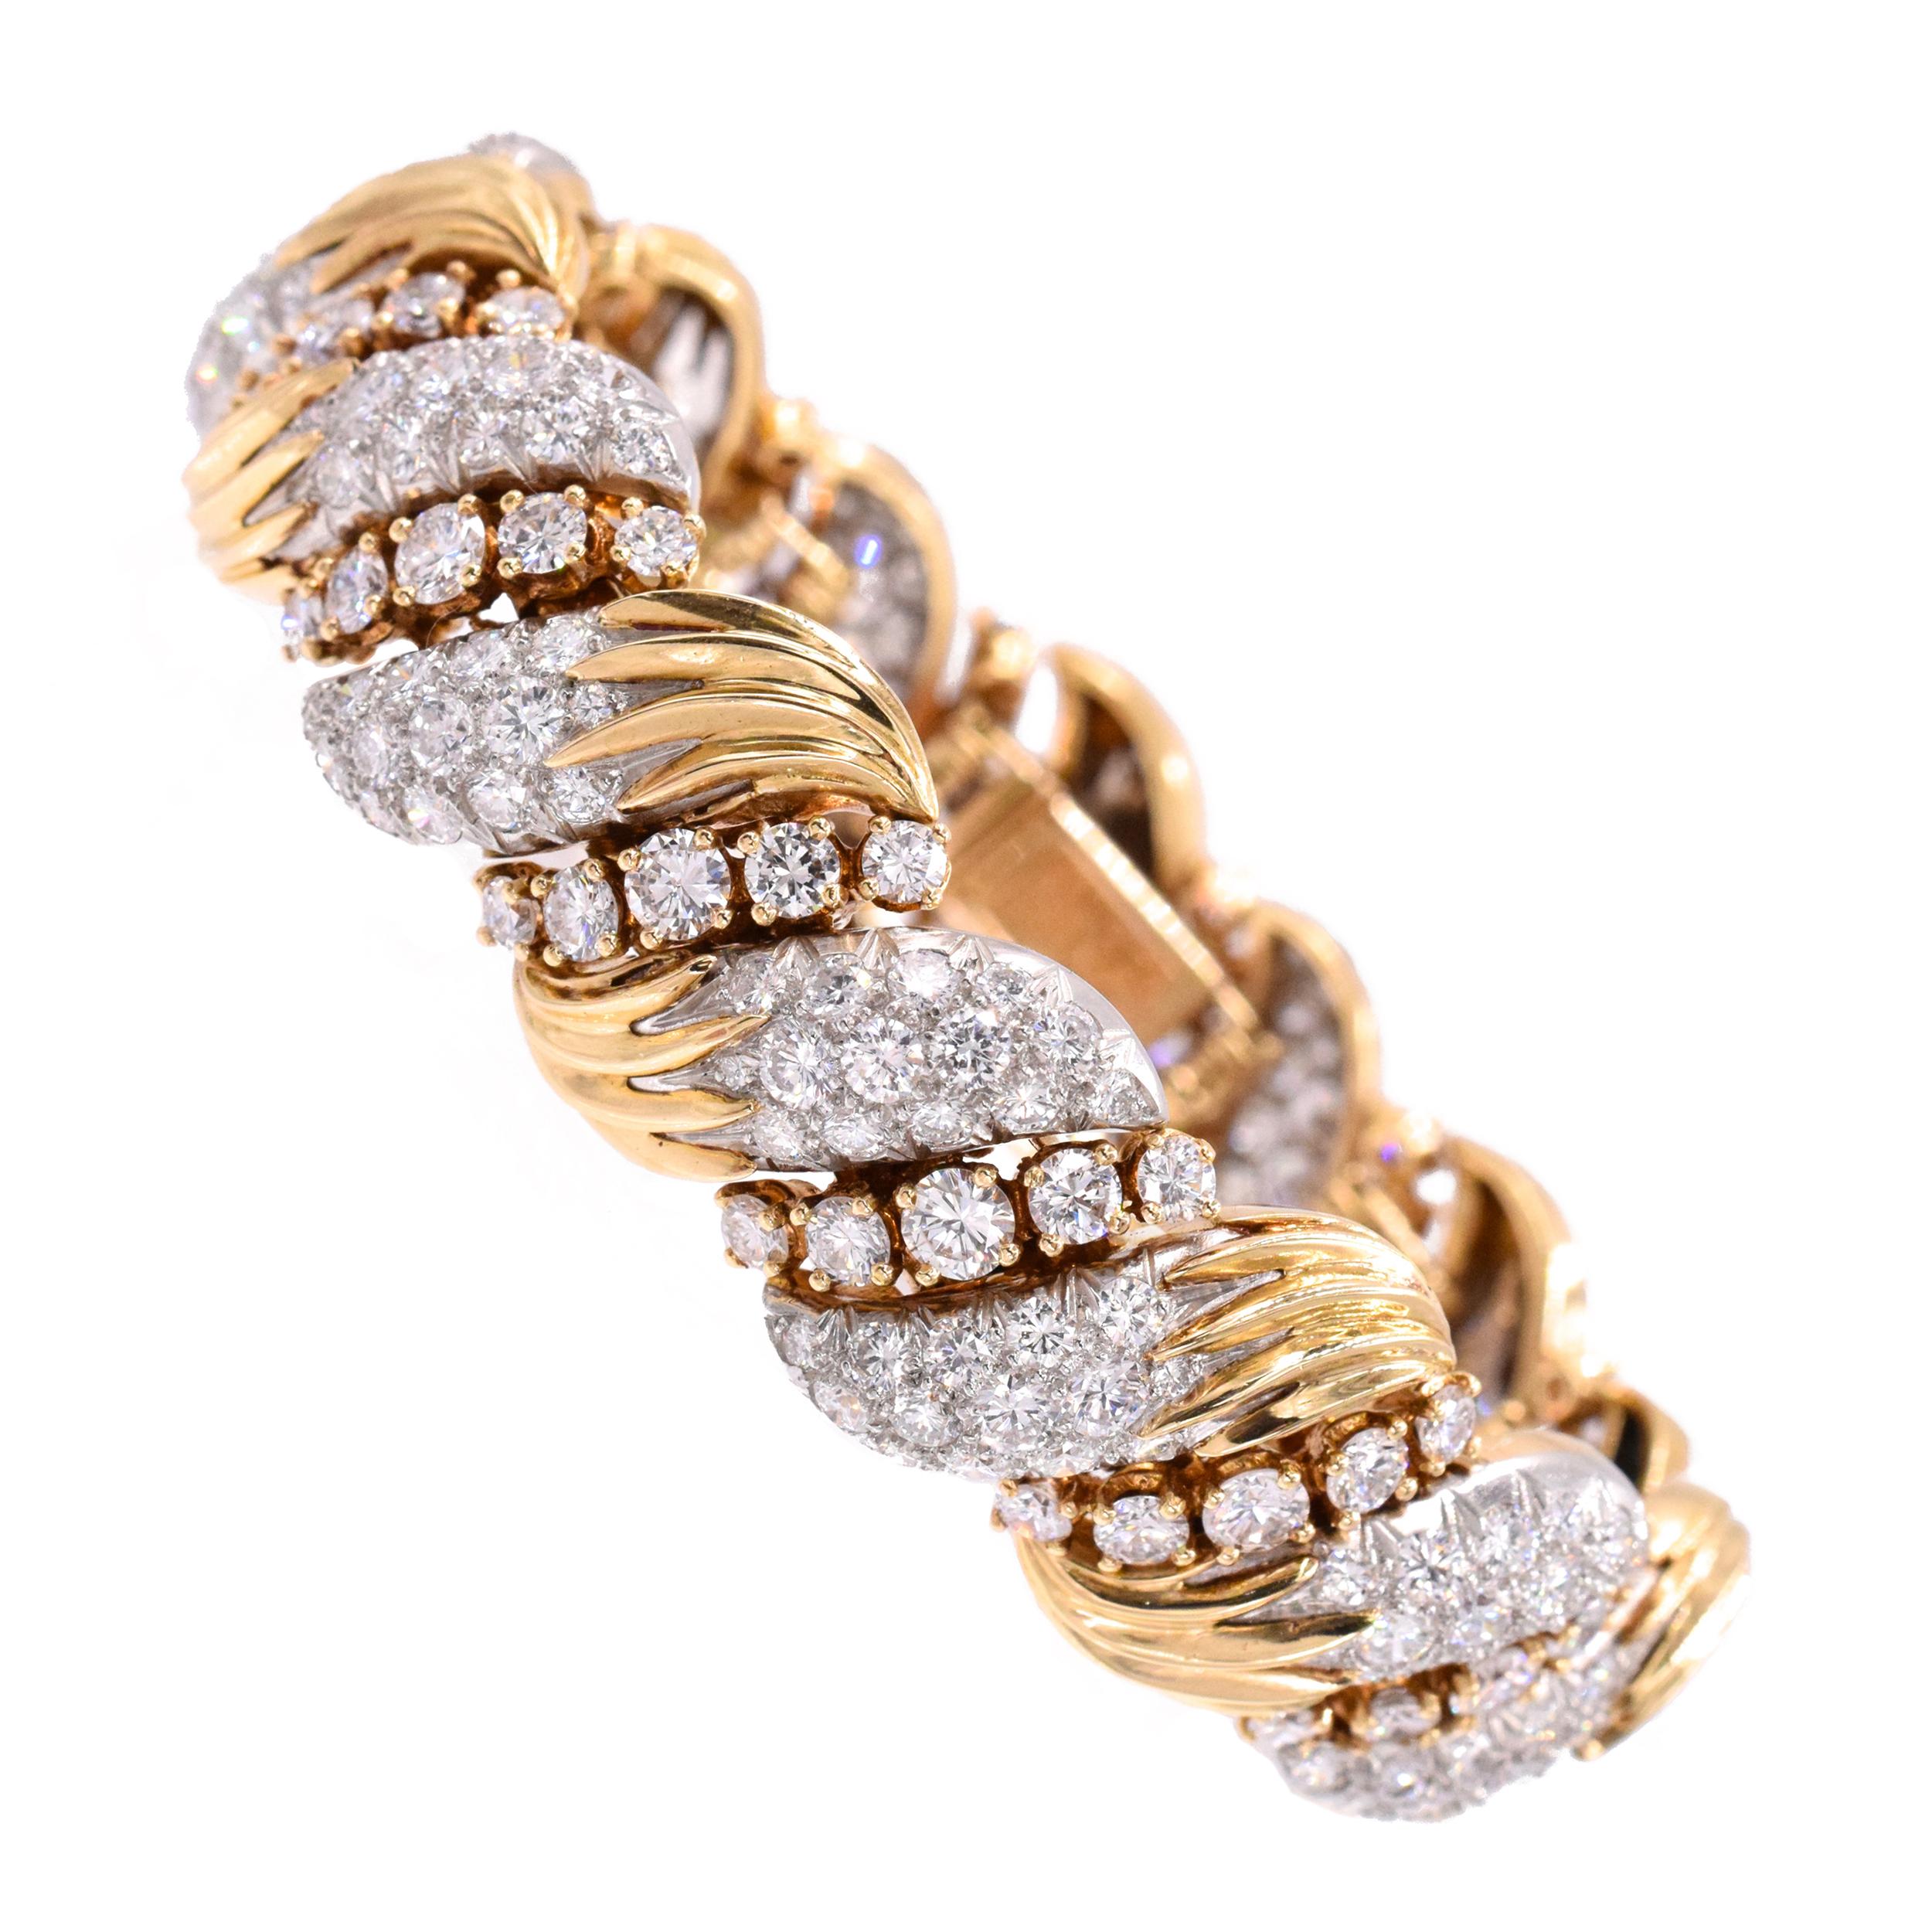 Van Cleef & Arpels Diamantarmband mit kreisförmig geschliffenen Diamanten mit einem ungefähren Gewicht von 16 Karat
 gefasst in Platin und 18 Karat Gelbgold.
Das Armband ist 7 Zoll lang mit Französisch Punzen & nummeriert xxxx
Hergestellt in